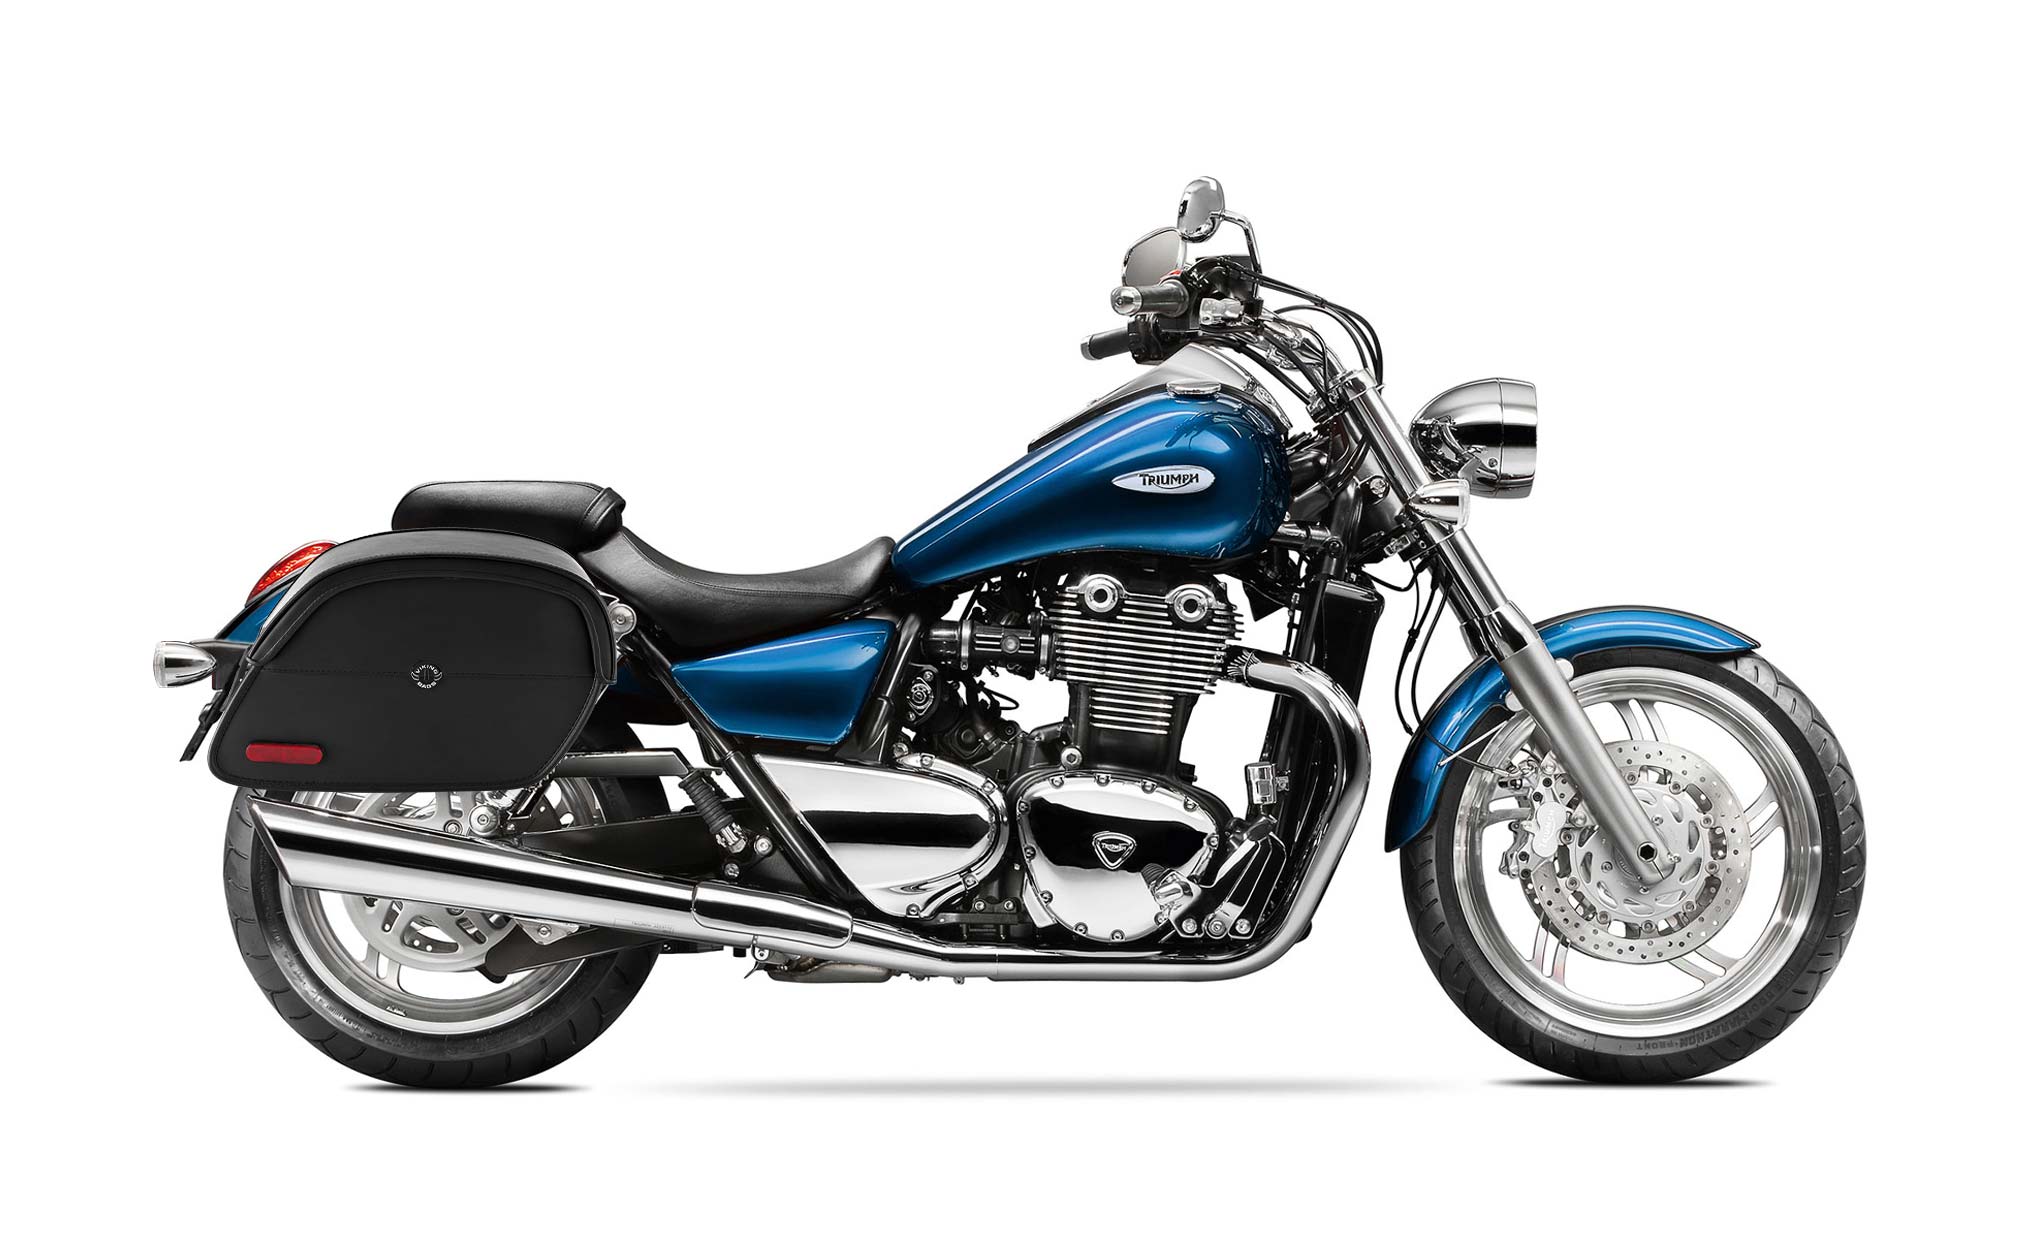 Viking California Large Triumph Thunderbird Leather Motorcycle Saddlebags on Bike Photo @expand